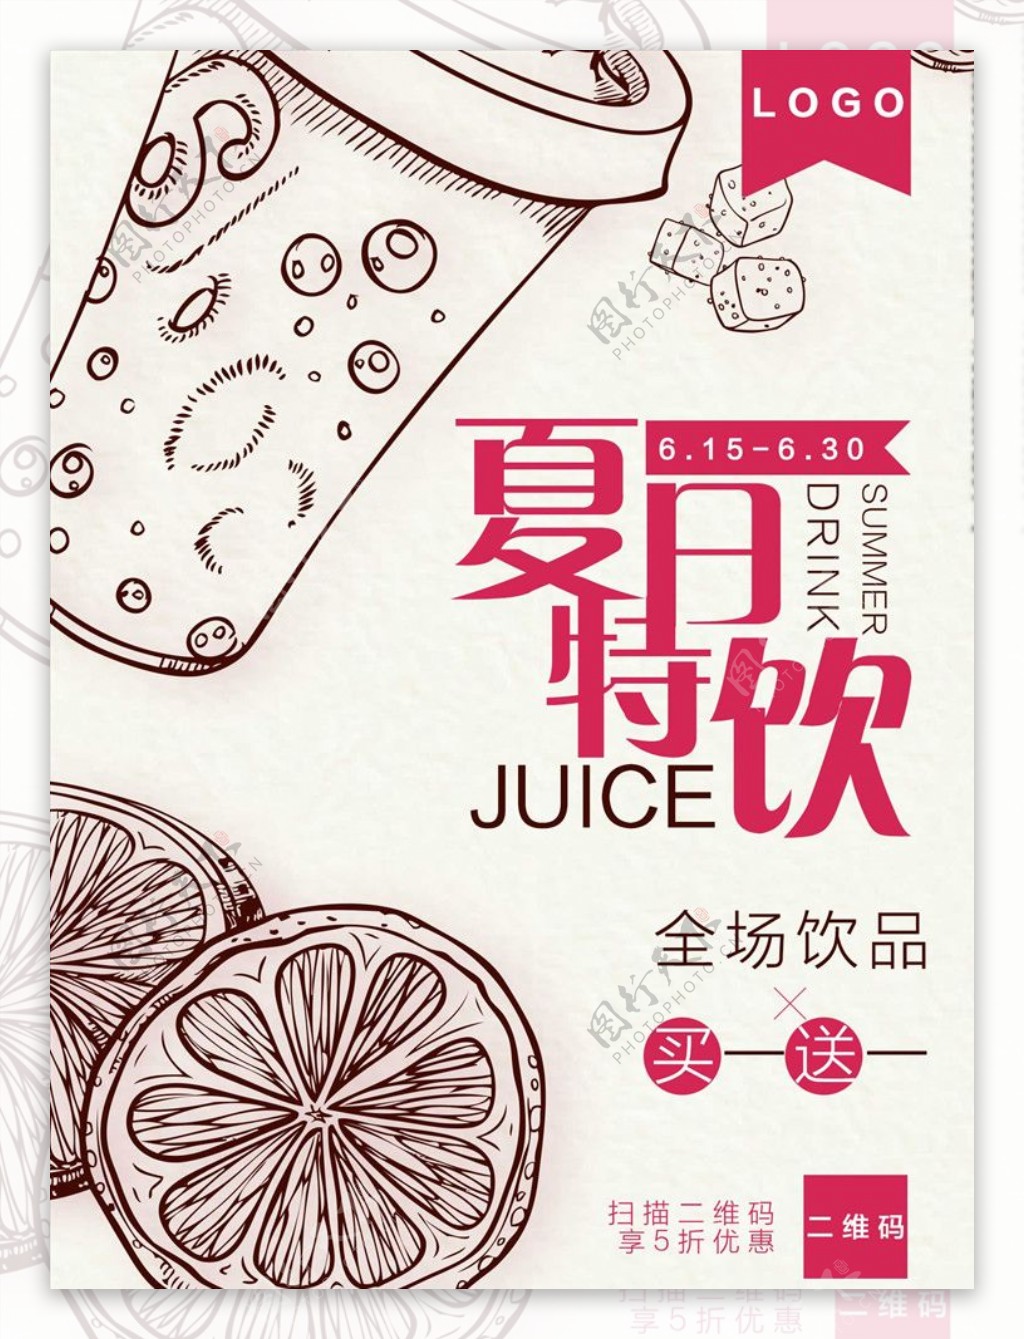 简约奶茶饮品饮料促销活动海报